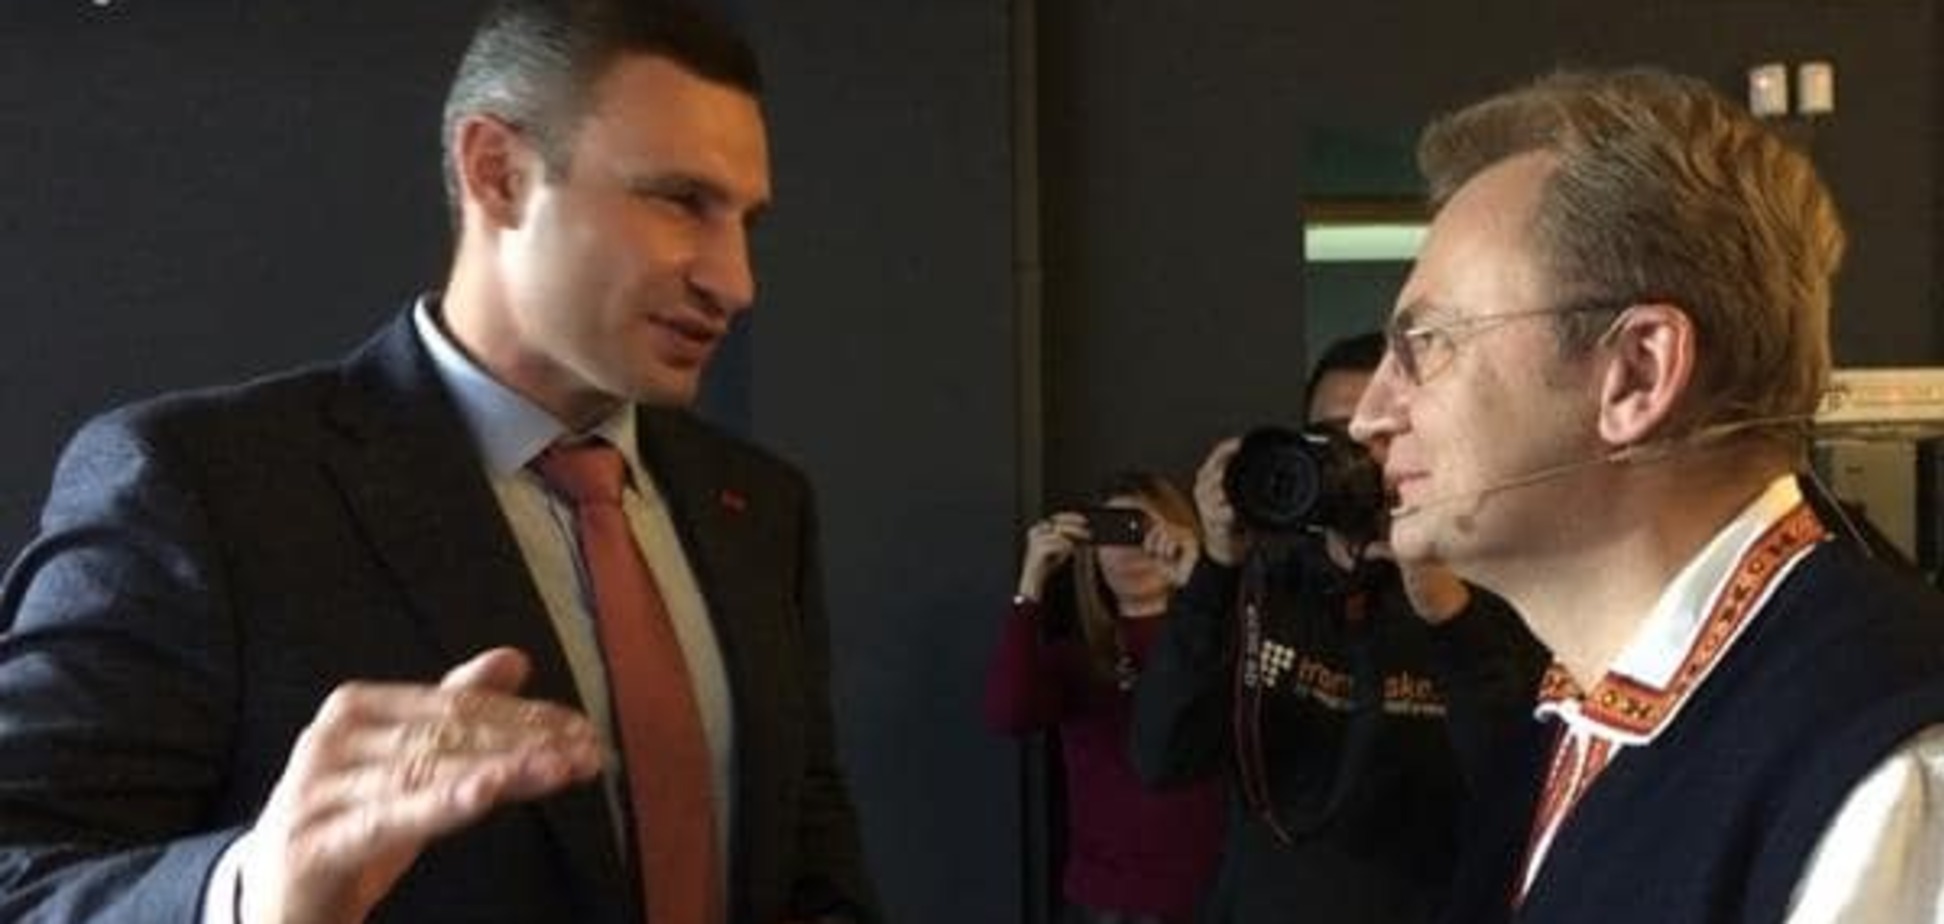 Волевой Кличко и уставший от реальности Садовый: физиономист проанализировал лица политиков